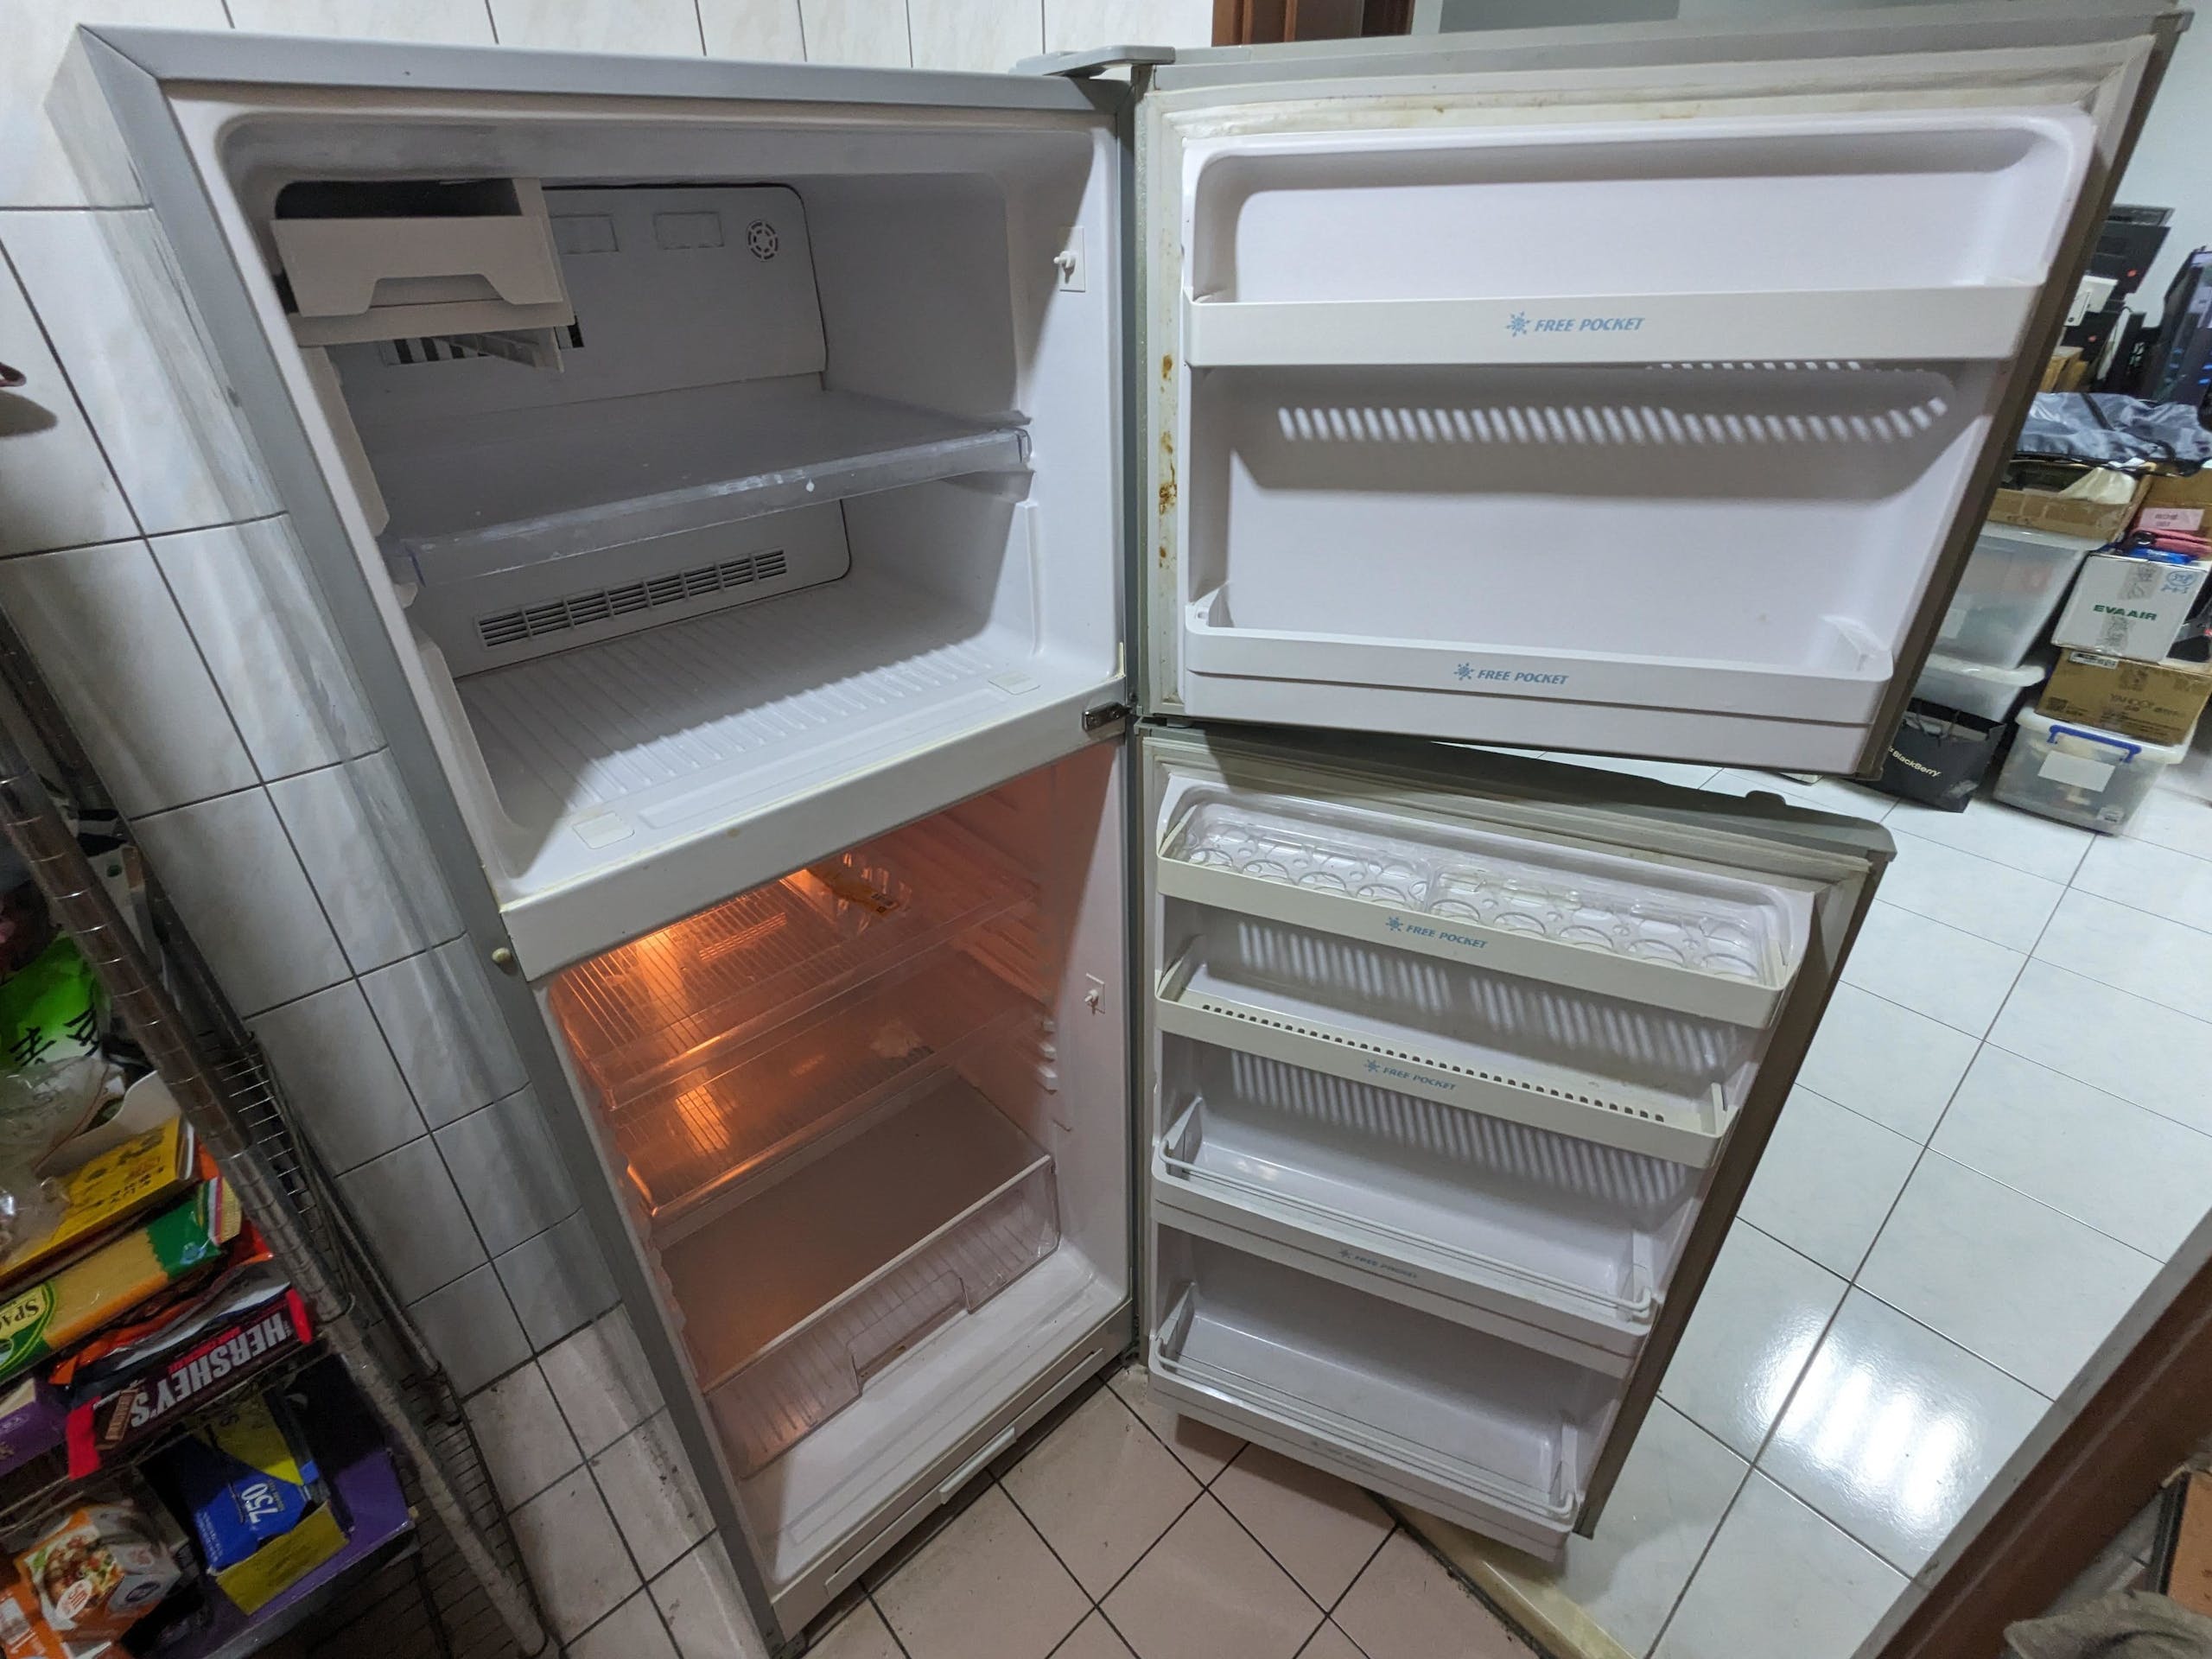 照片中提到了X、S、A，包含了冰箱、冰箱、M-017、器具、大家電